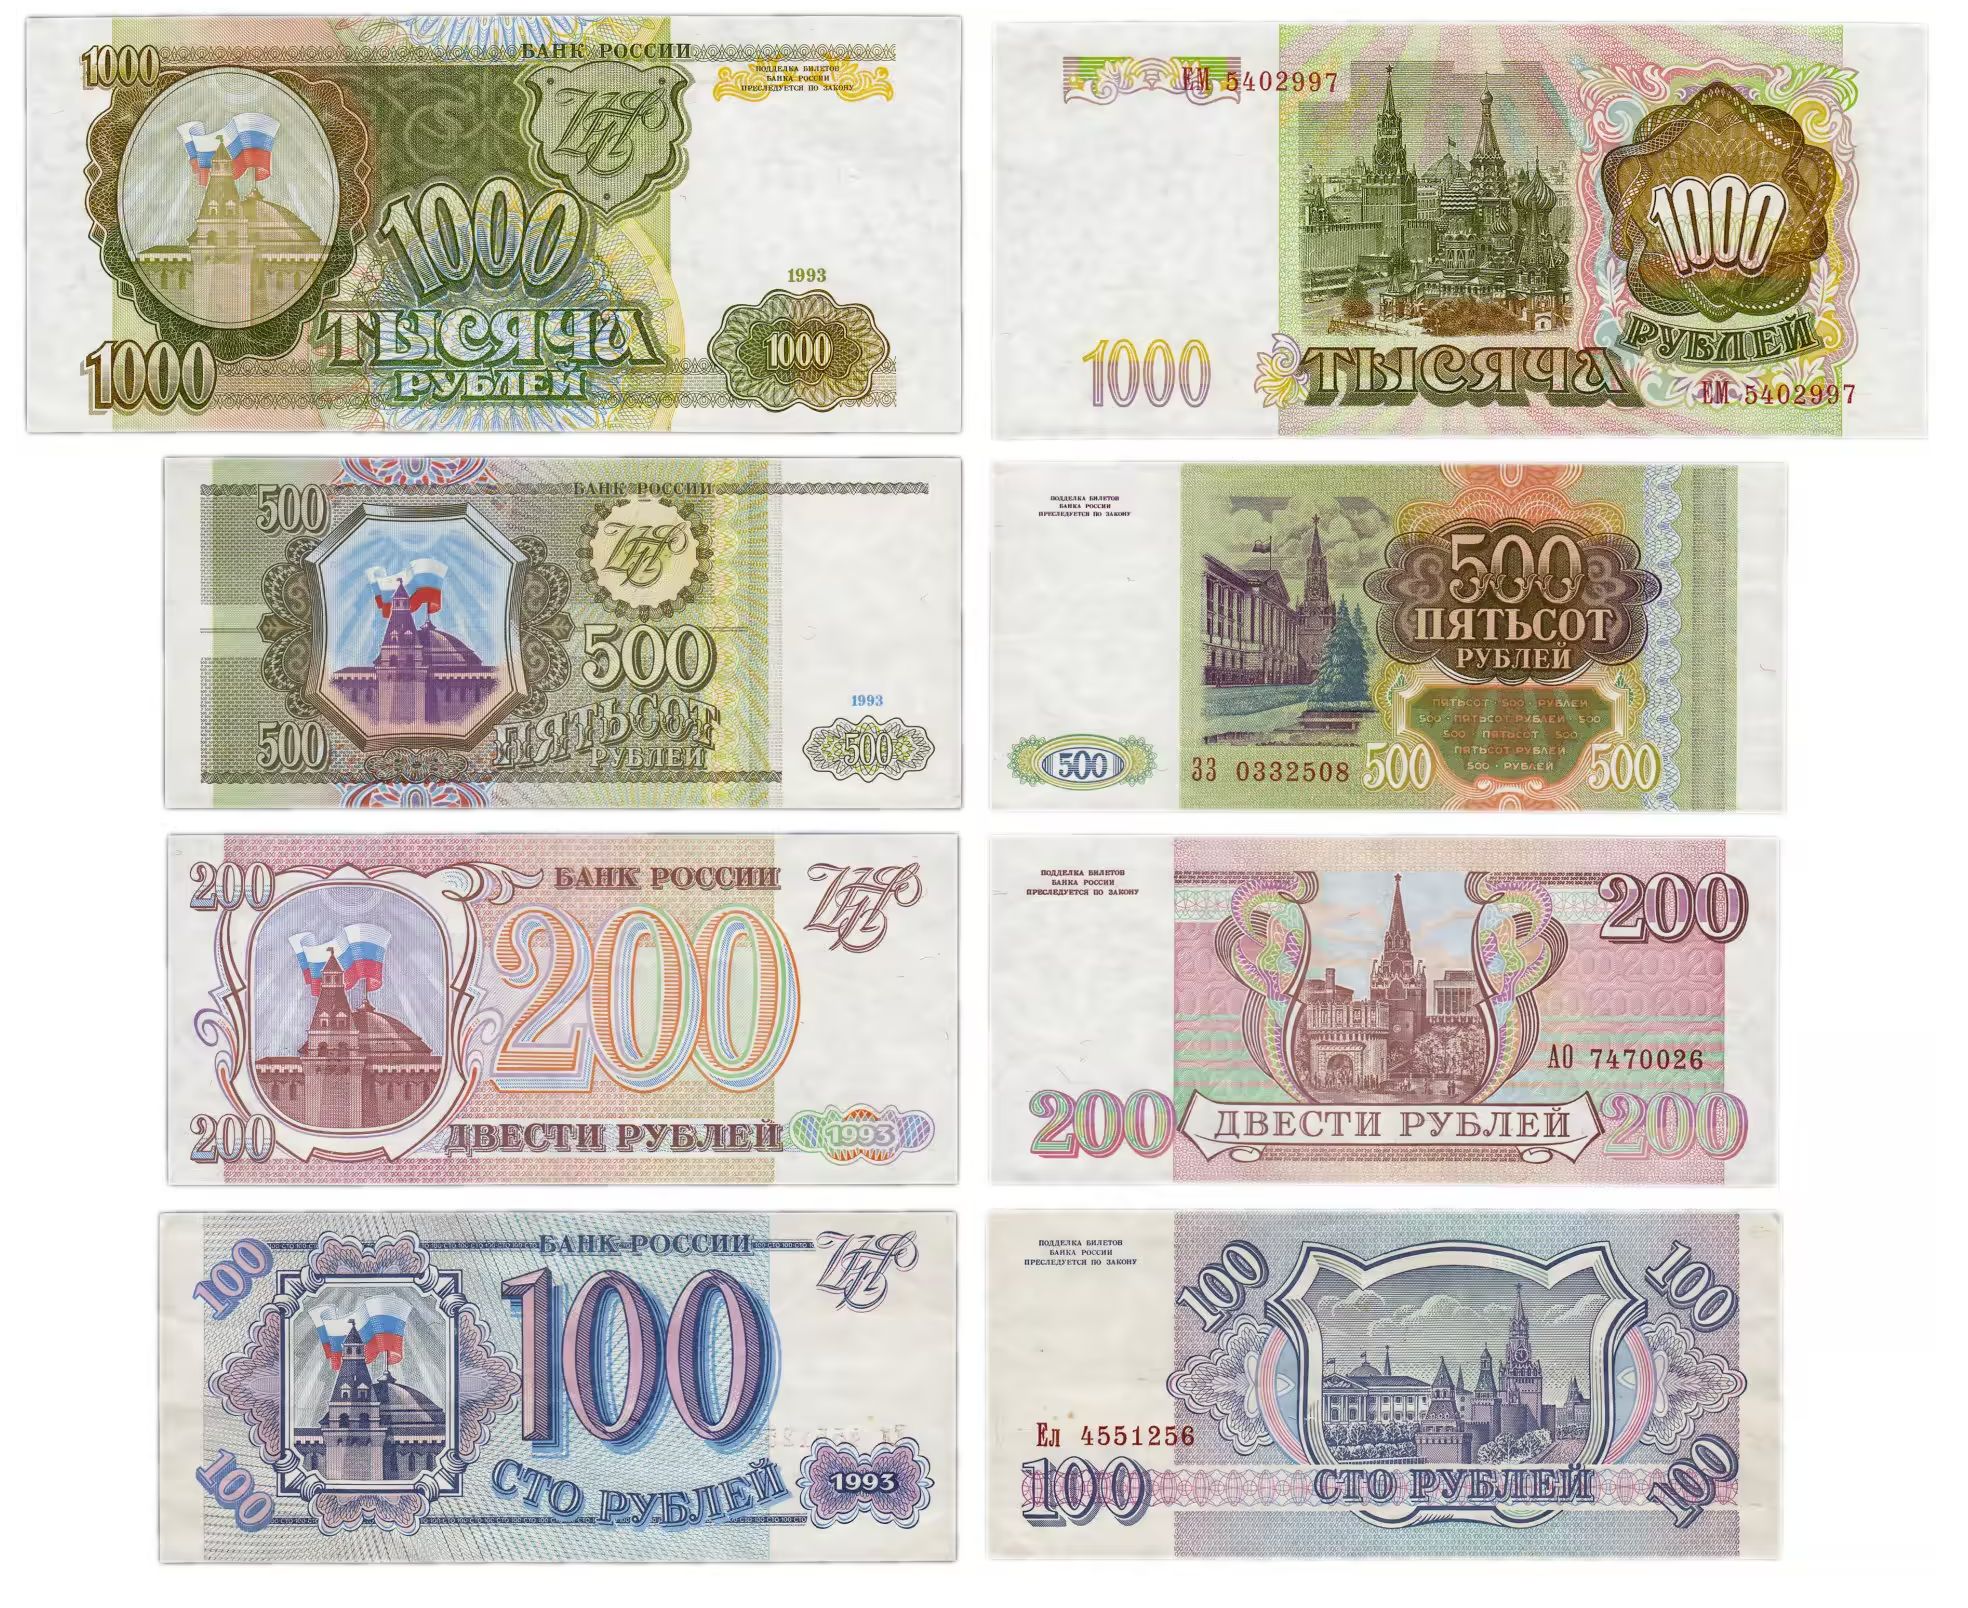 Пятьсот четыре рубля. 100 Рублей 1993 года. Купюры 100, 200, 500 рублей 1993 года. Банкноты 100 рублей 1993. СТО рублей купюра 1993.